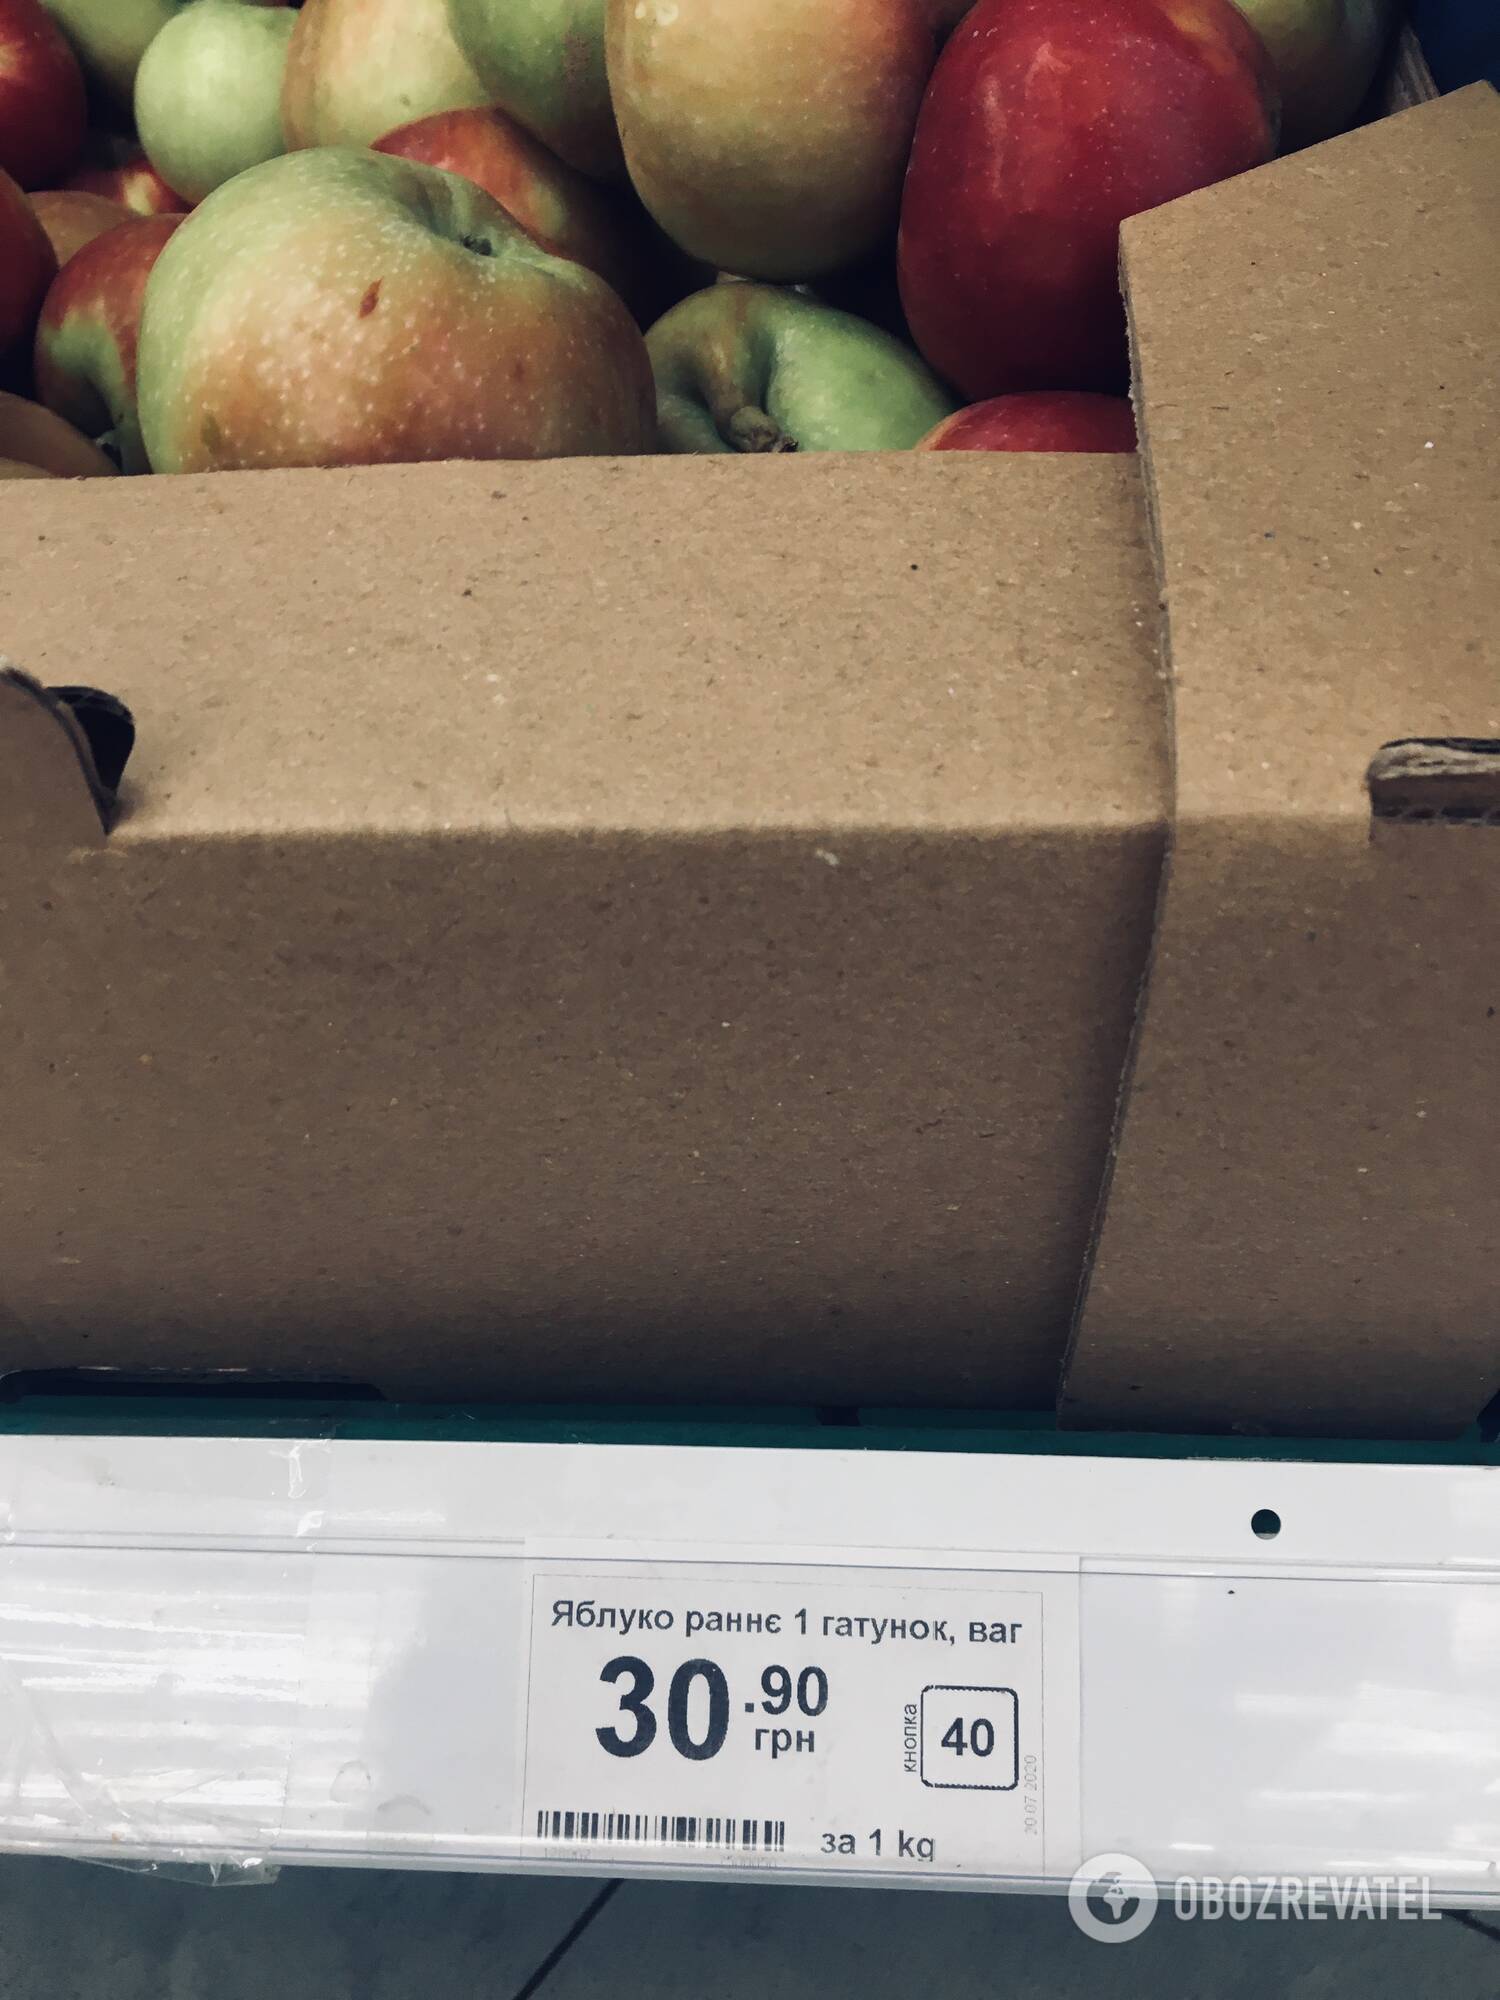 Чем меньше по размеру яблоки - тем дешевле